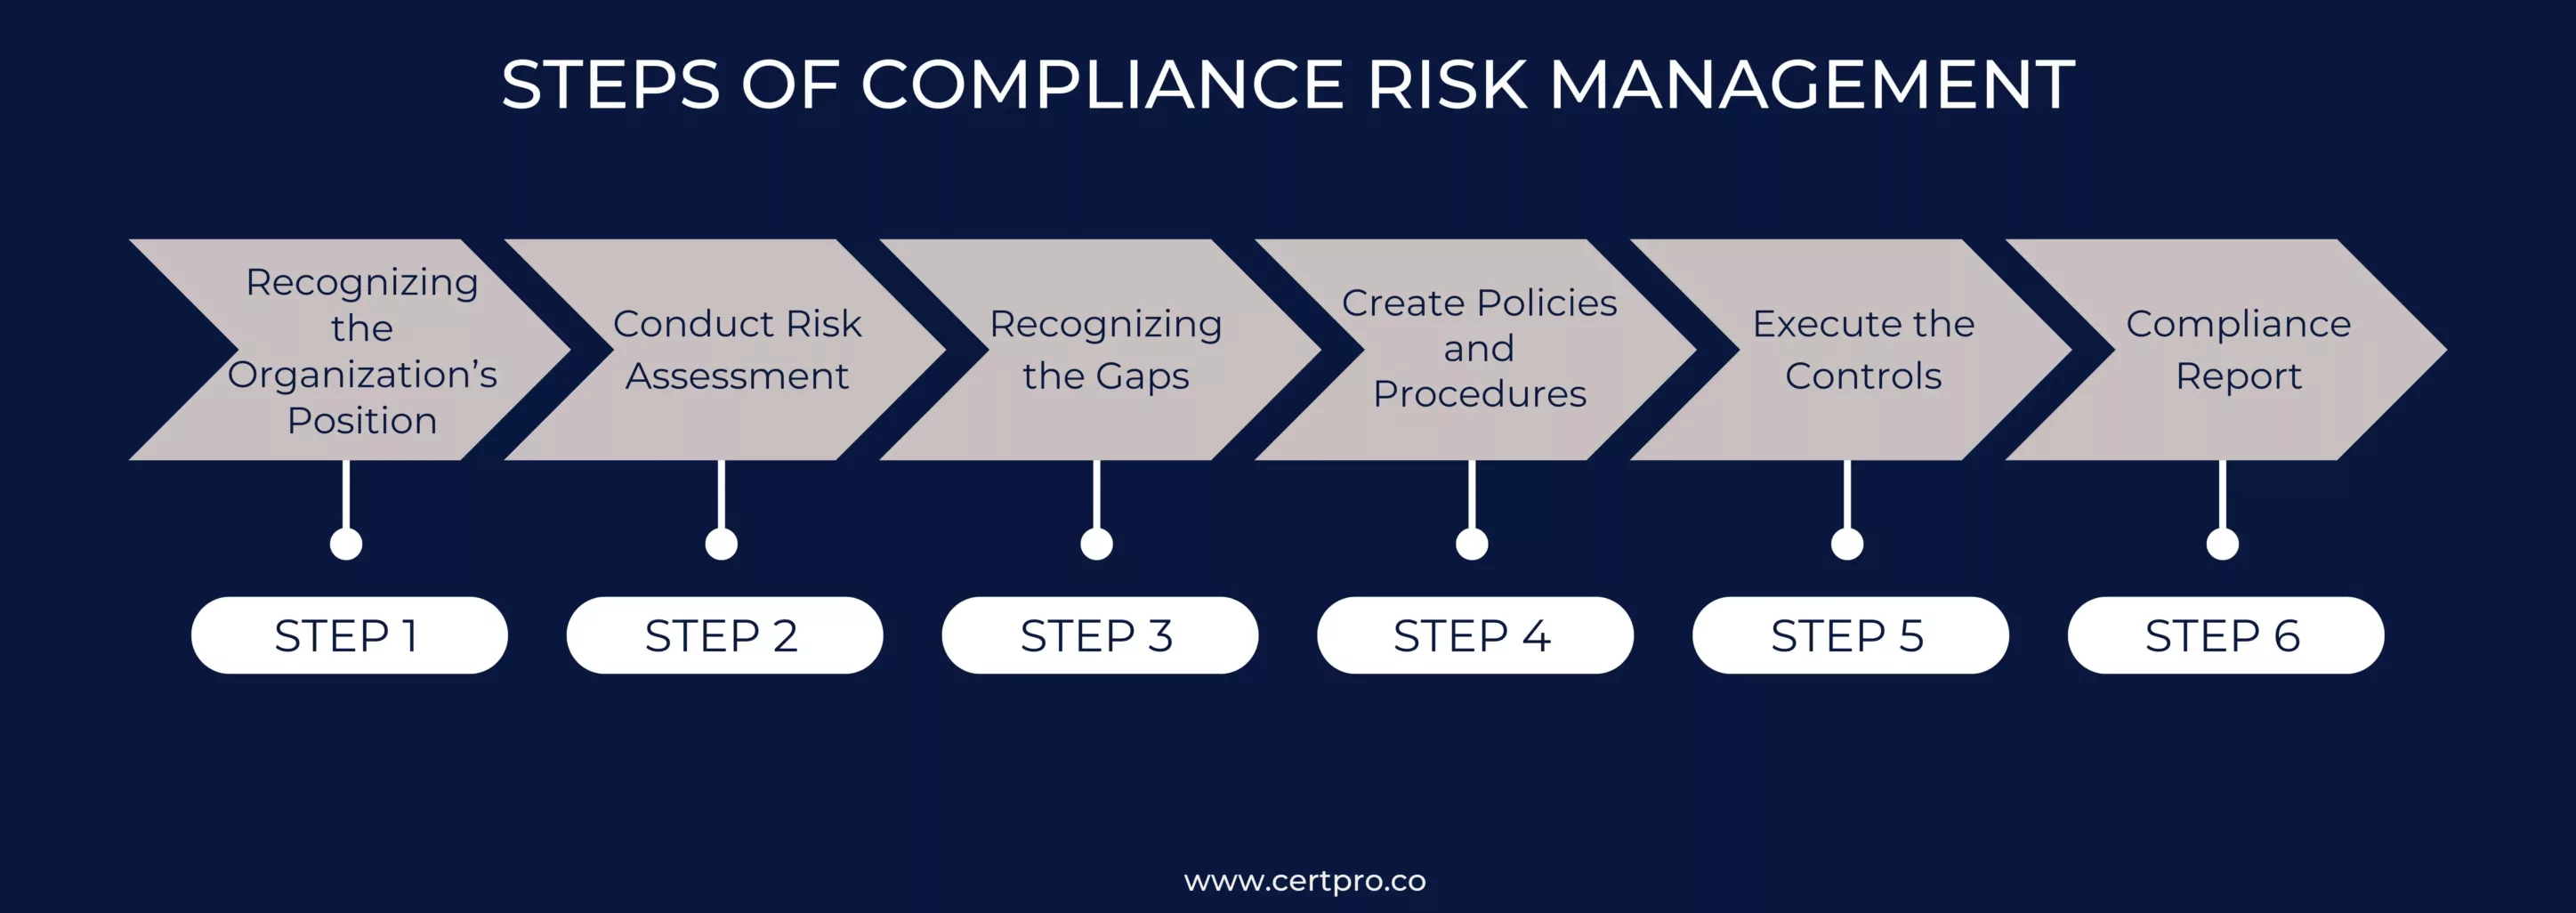 STEPS OF COMPLIANCE RISK MANAGEMENT (2)